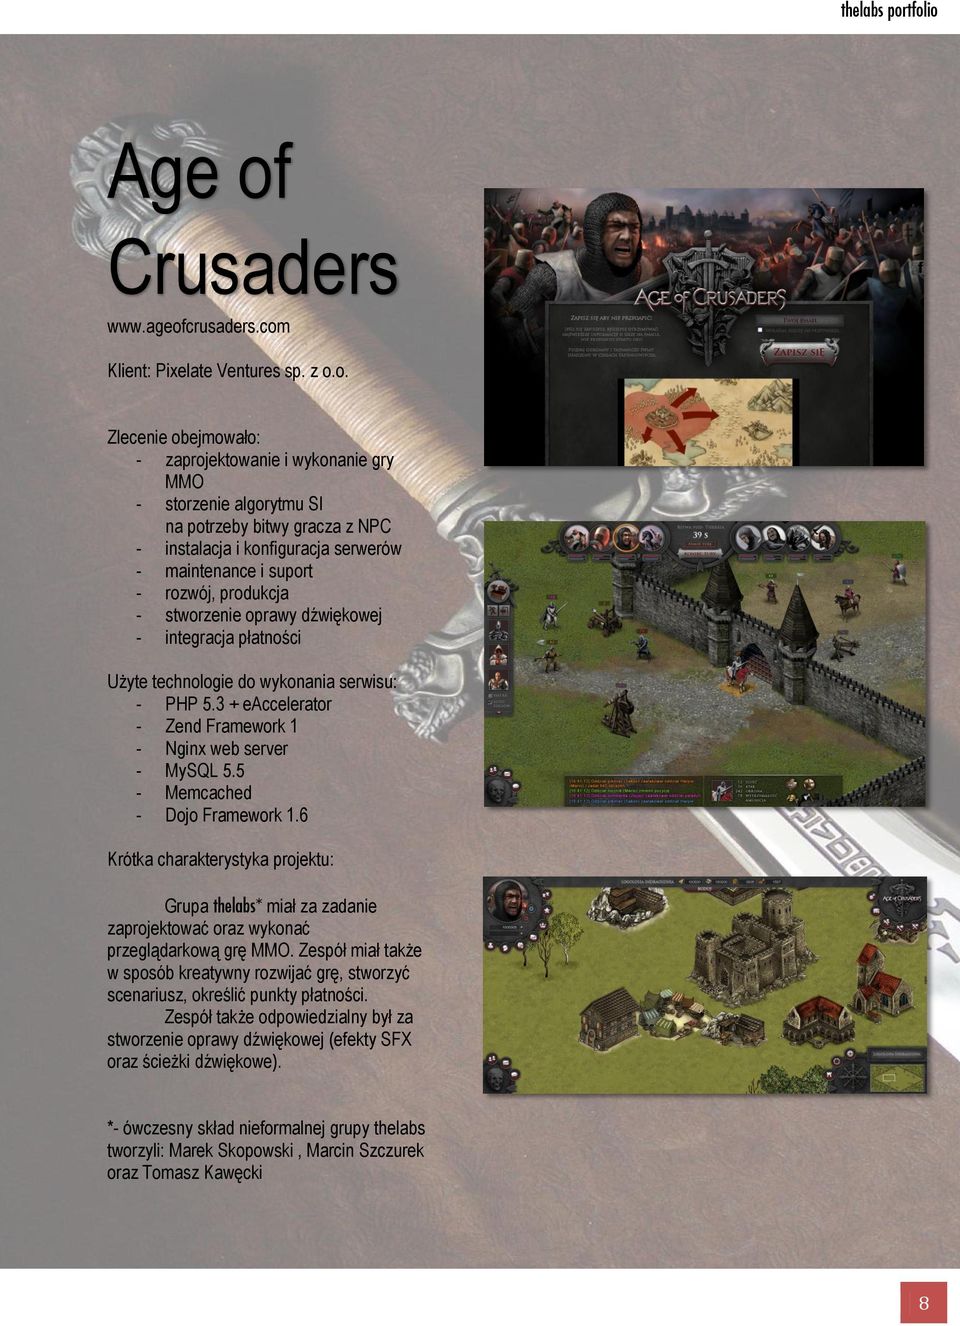 crusaders.com